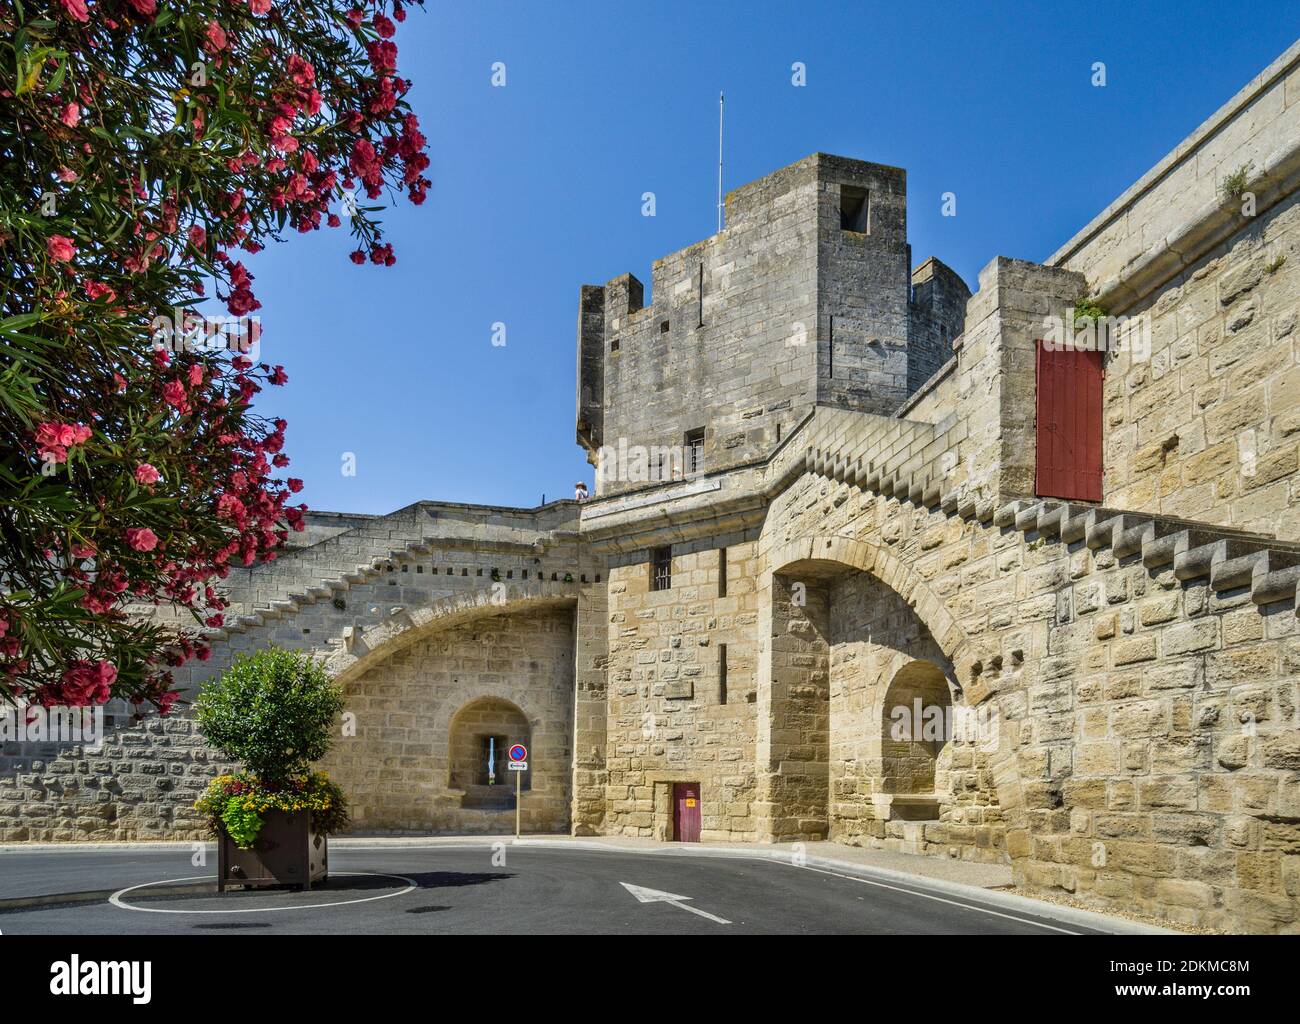 Partie sud de la ville médiévale fortifiée d'Aigues-mortes, petite Camargue, département du Gard, région occitanie, sud de la France Banque D'Images